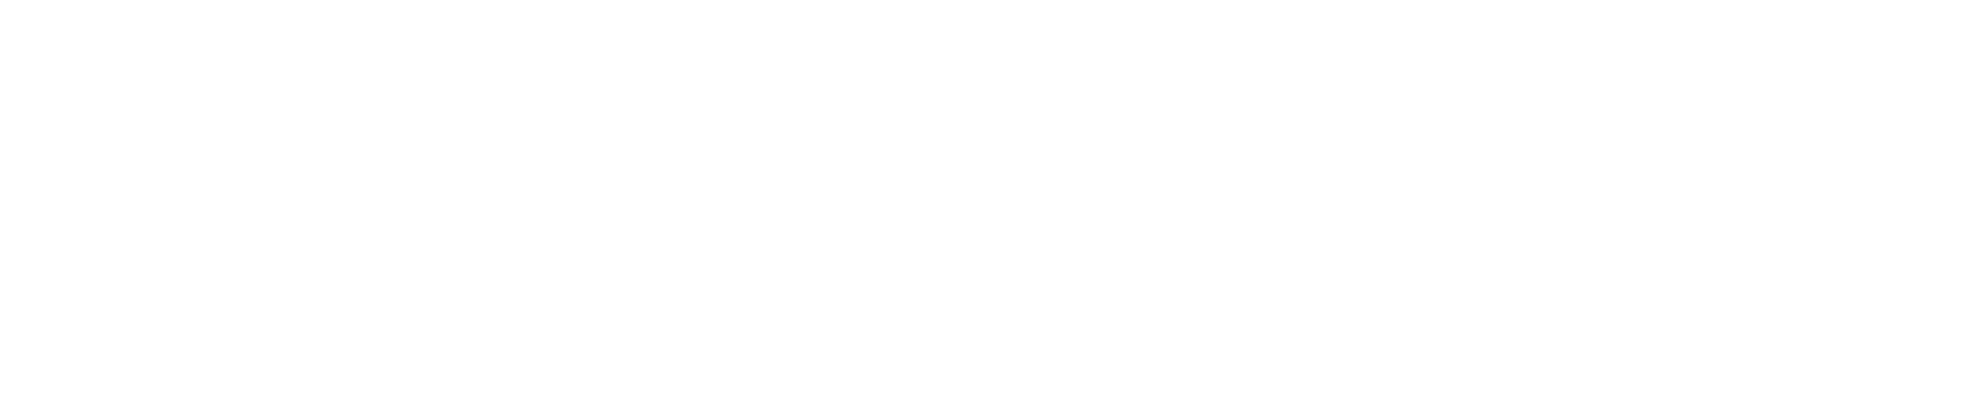 logo meatfly